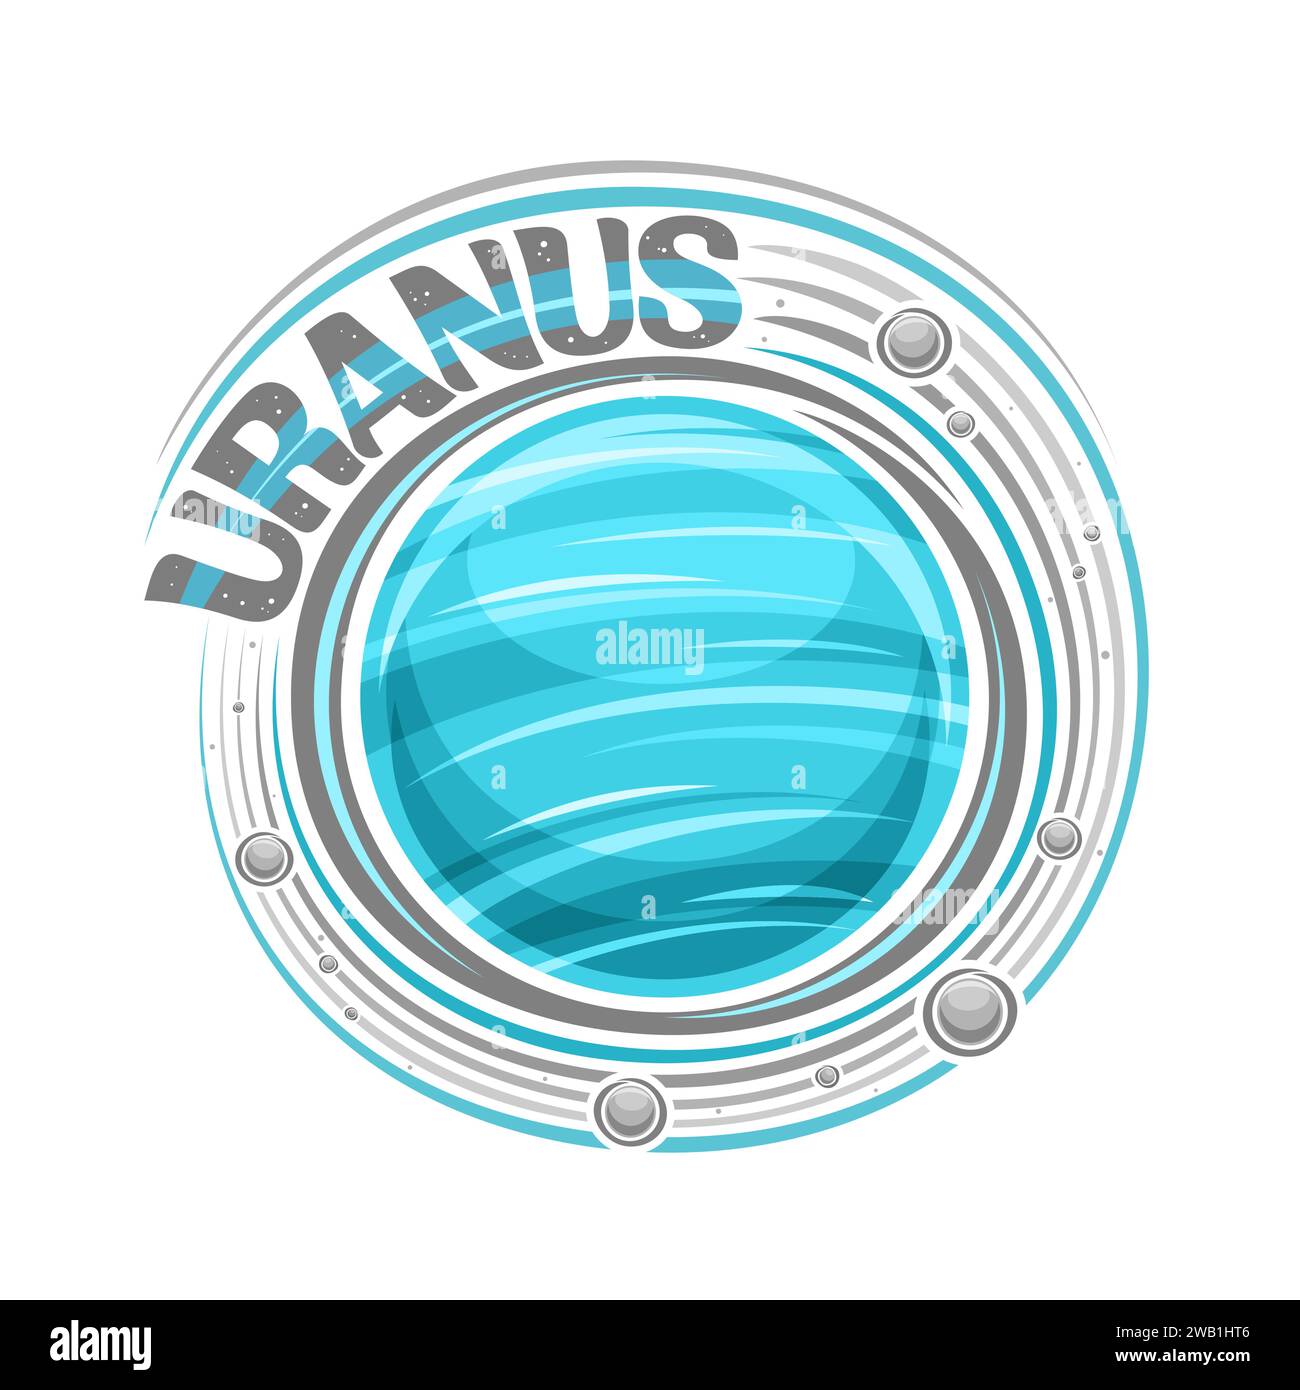 Logo vettoriale per Urano, stampa cosmica decorativa con pianeta rotante urano e molte lune, superficie ventosa gassosa, adesivo blu cosmo con esclusiva spazzola Illustrazione Vettoriale